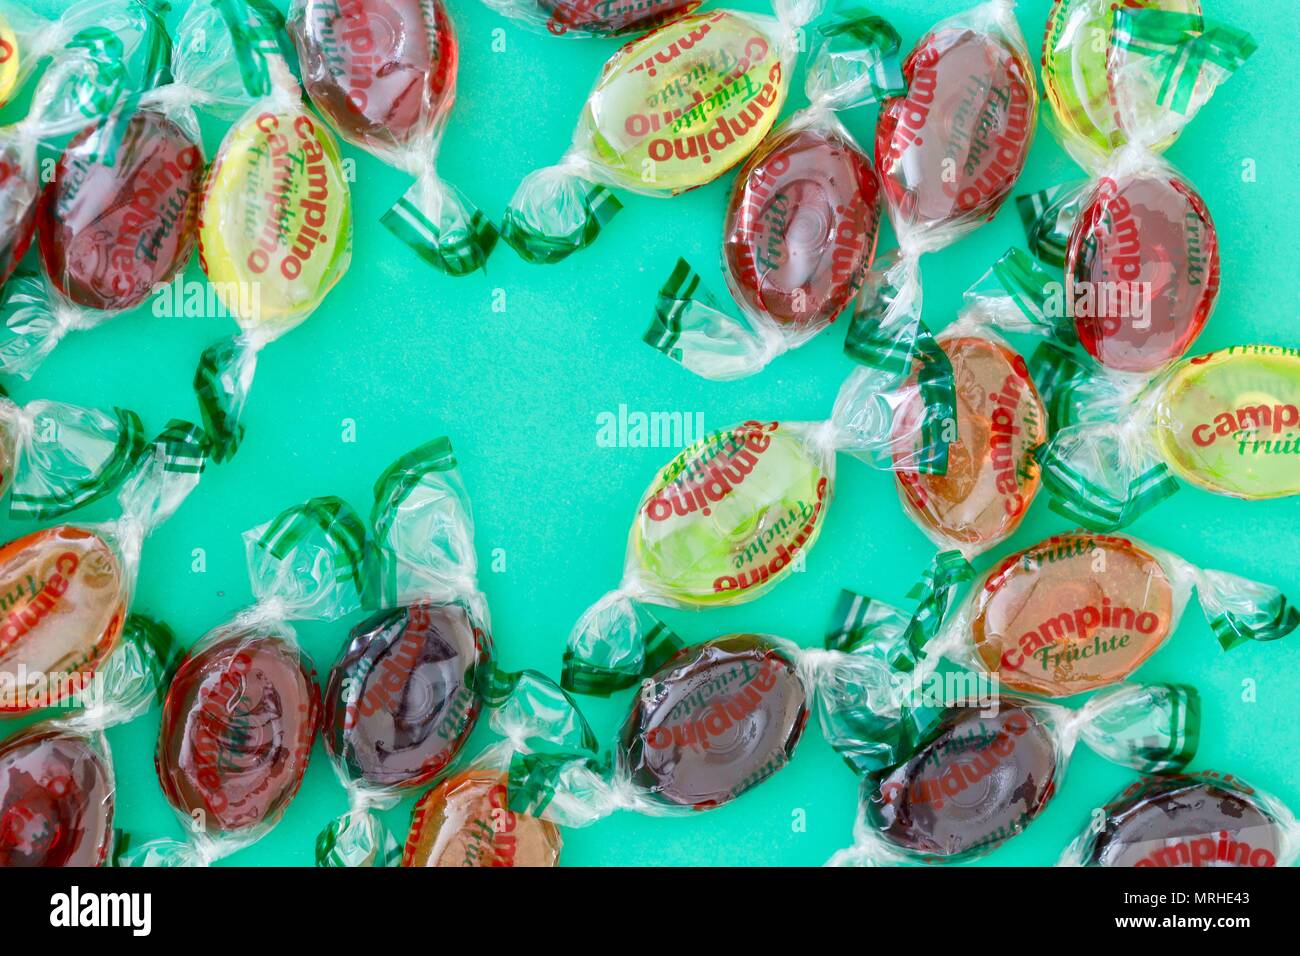 Bonbons aromatisés aux fruits bouillis Campino sur fond bleu turquoise  Photo Stock - Alamy